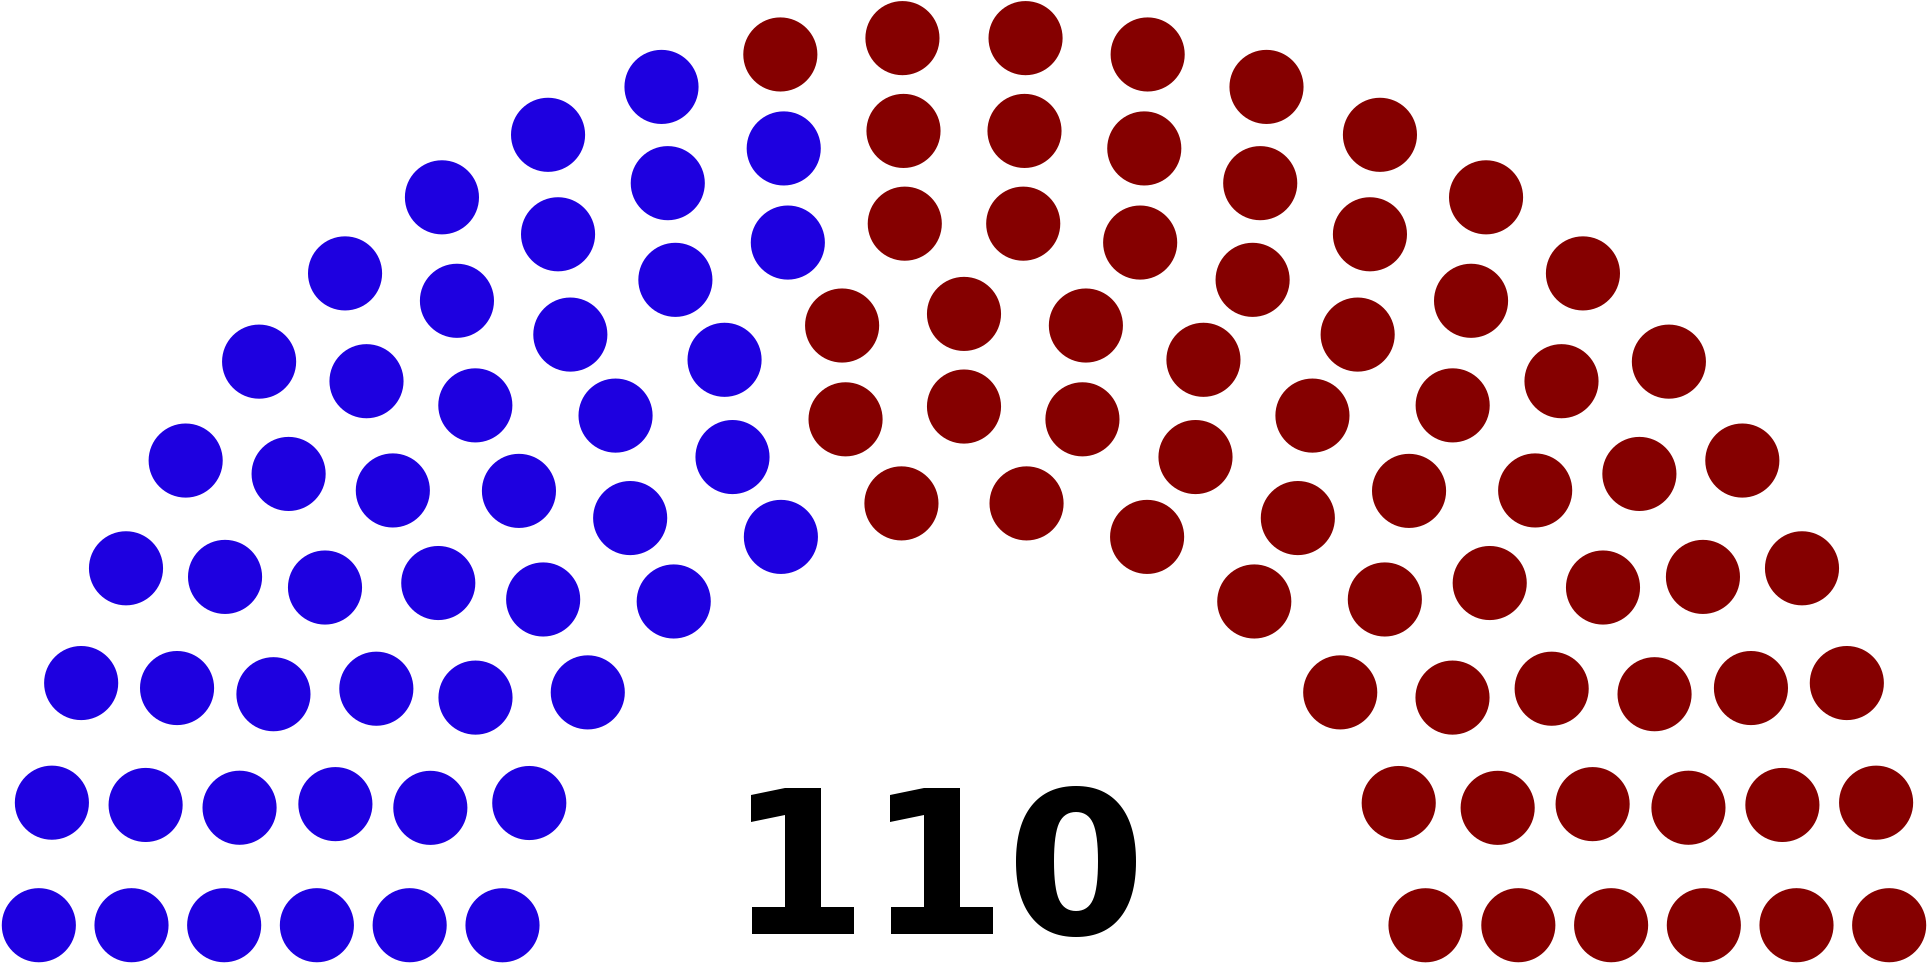 Open - United States Senate 2016 (2000x1028)